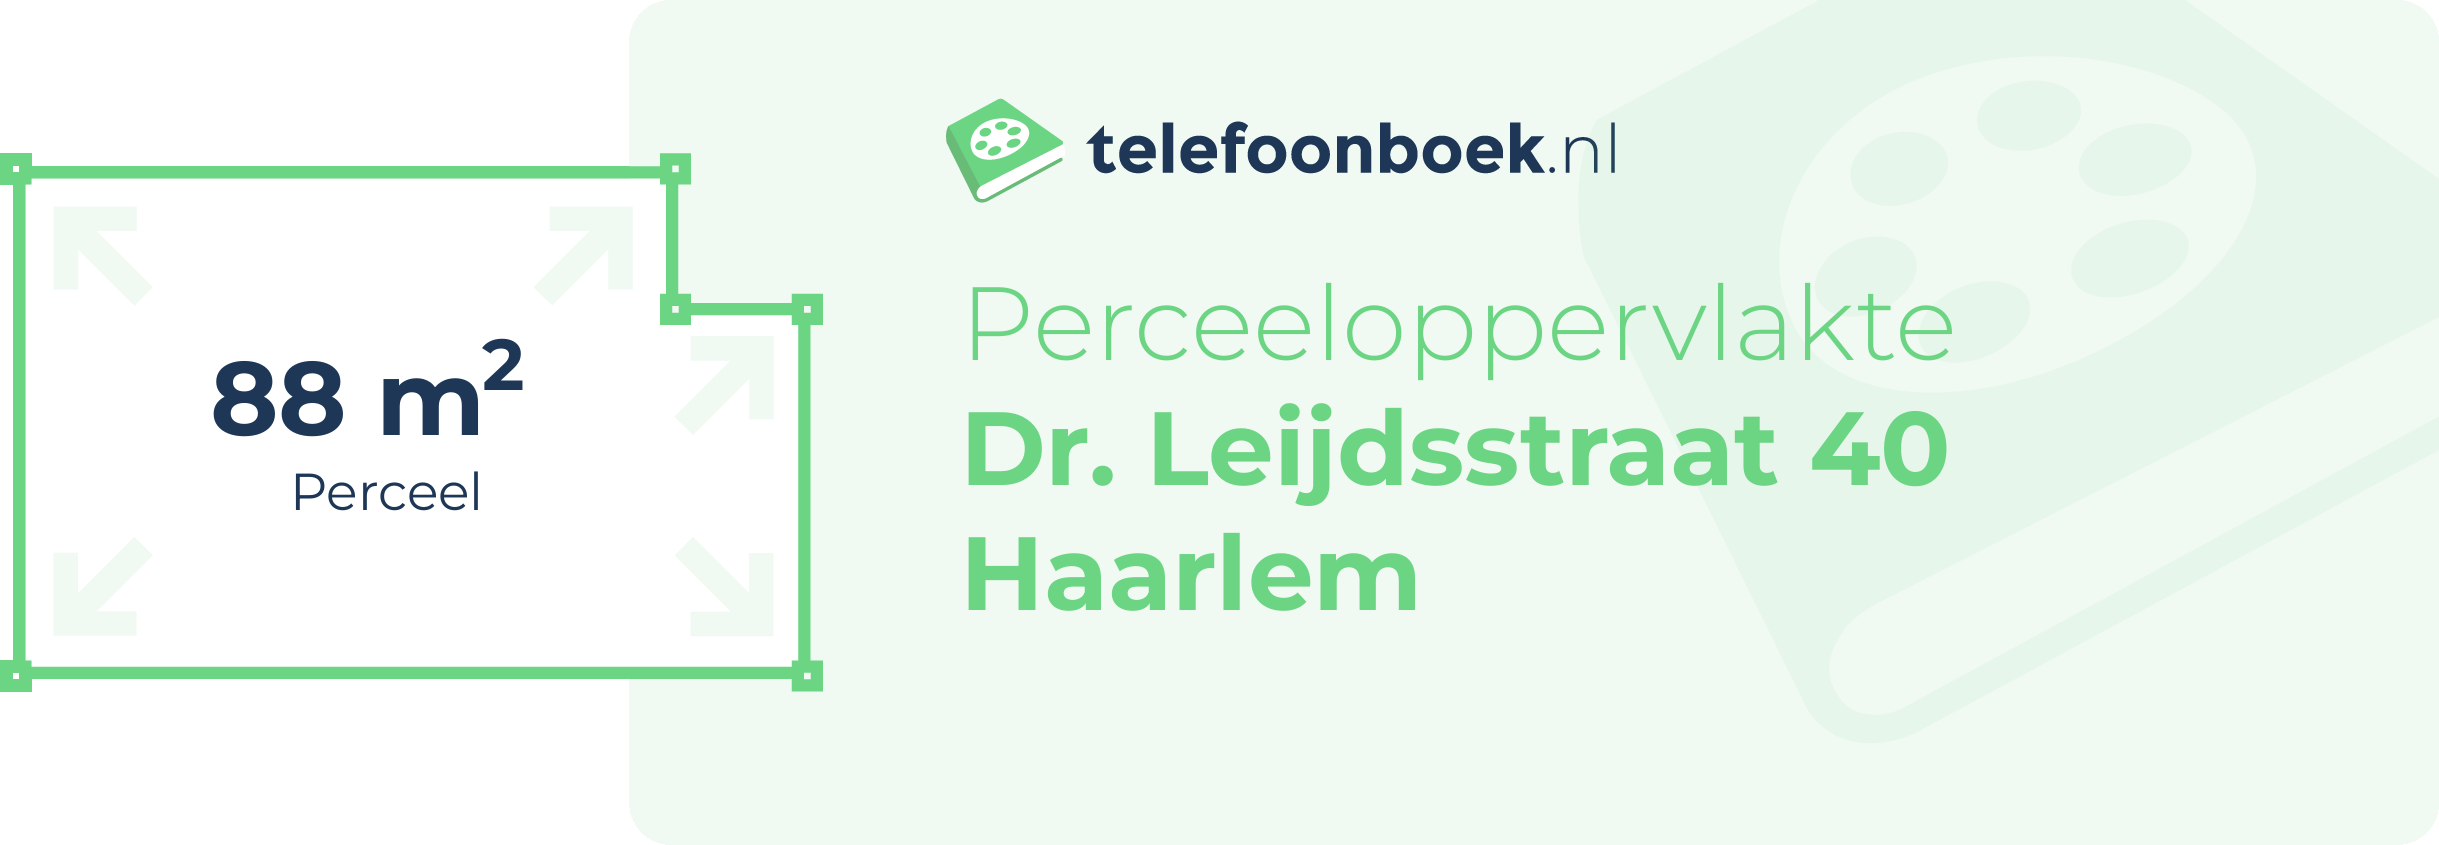 Perceeloppervlakte Dr. Leijdsstraat 40 Haarlem